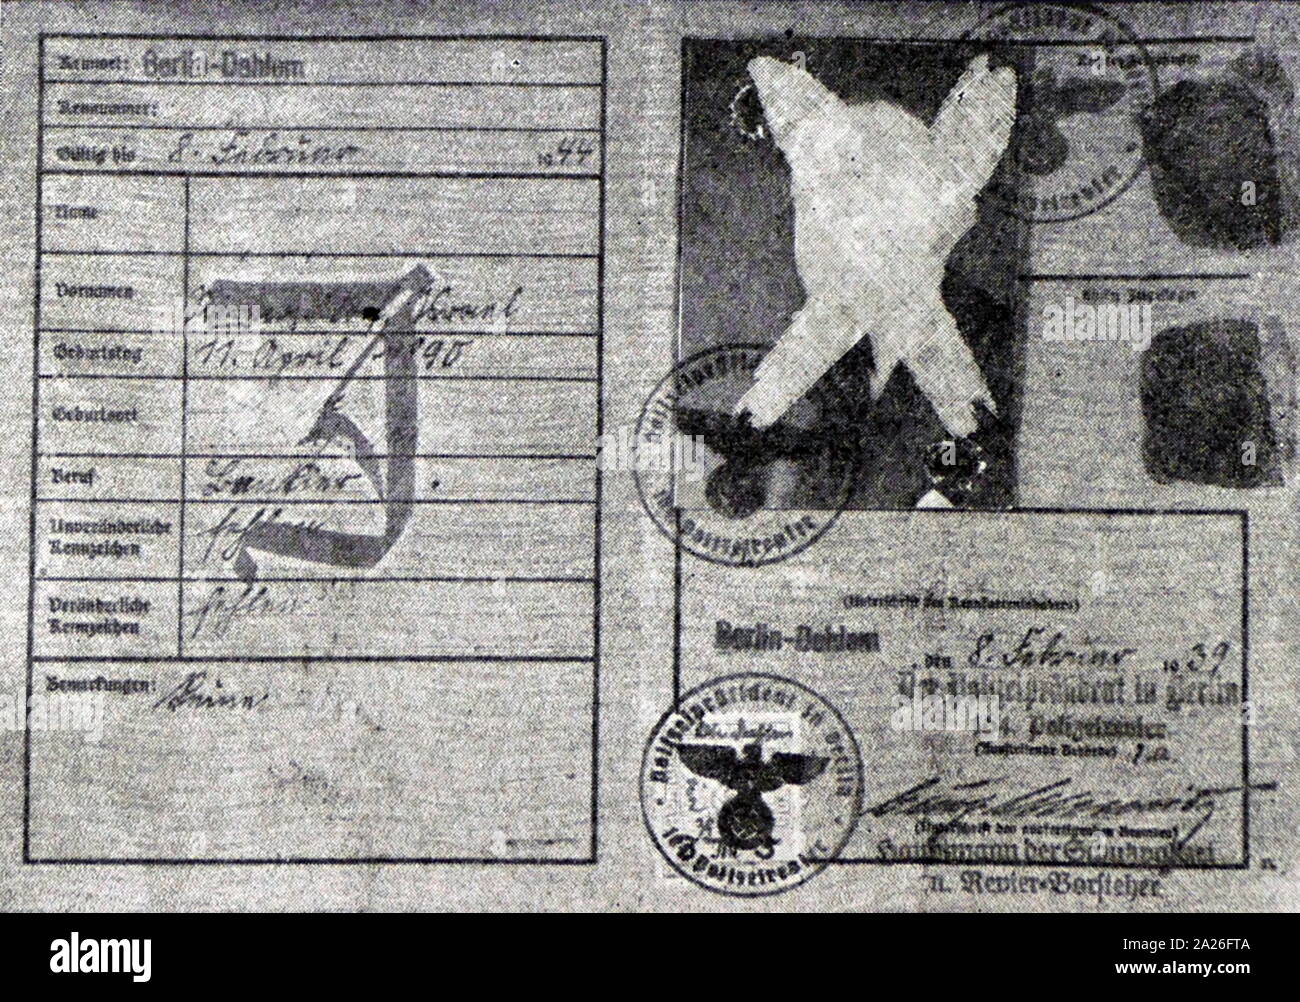 Jüdische Personen Personalausweis (Deutsches Reich Kennkarte), gekennzeichnet mit 'J' Judes (Jude), NS-Deutschland, 1938 Stockfoto